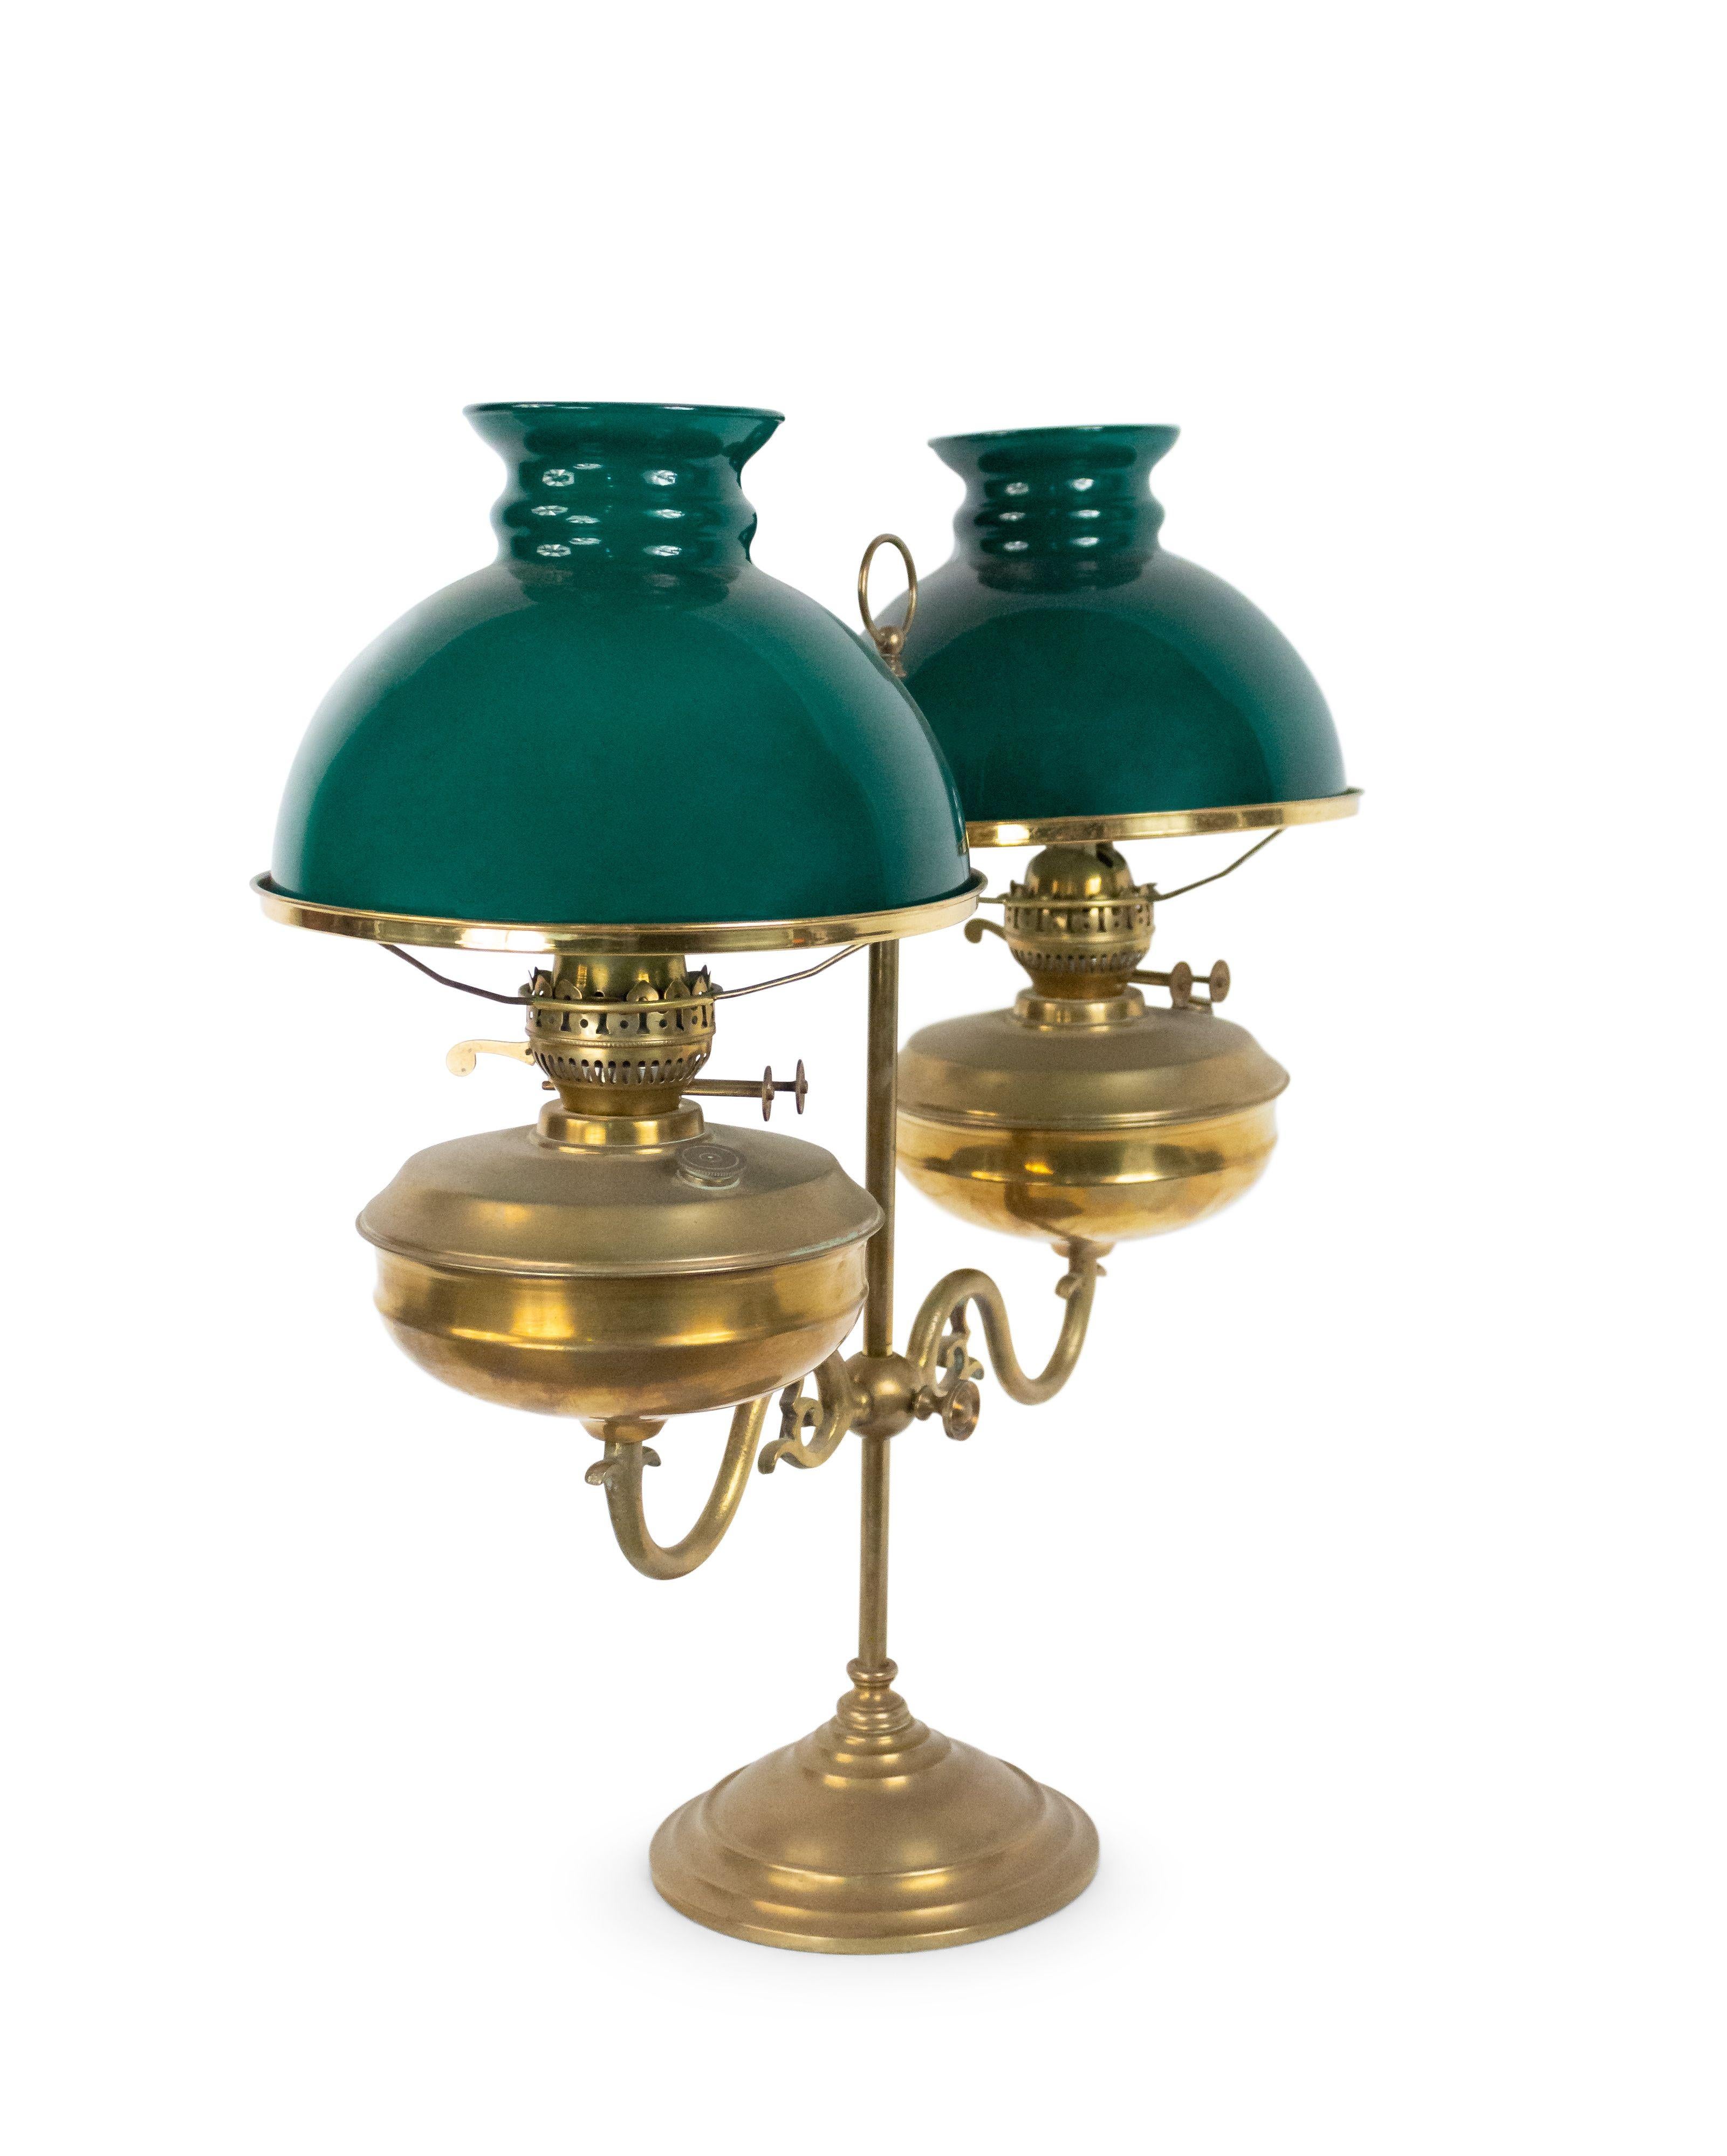 Verstellbare zweiarmige Studentenlampe aus englischer Bronze im viktorianischen Stil mit Ölfontäne und grünen Glasschirmen.